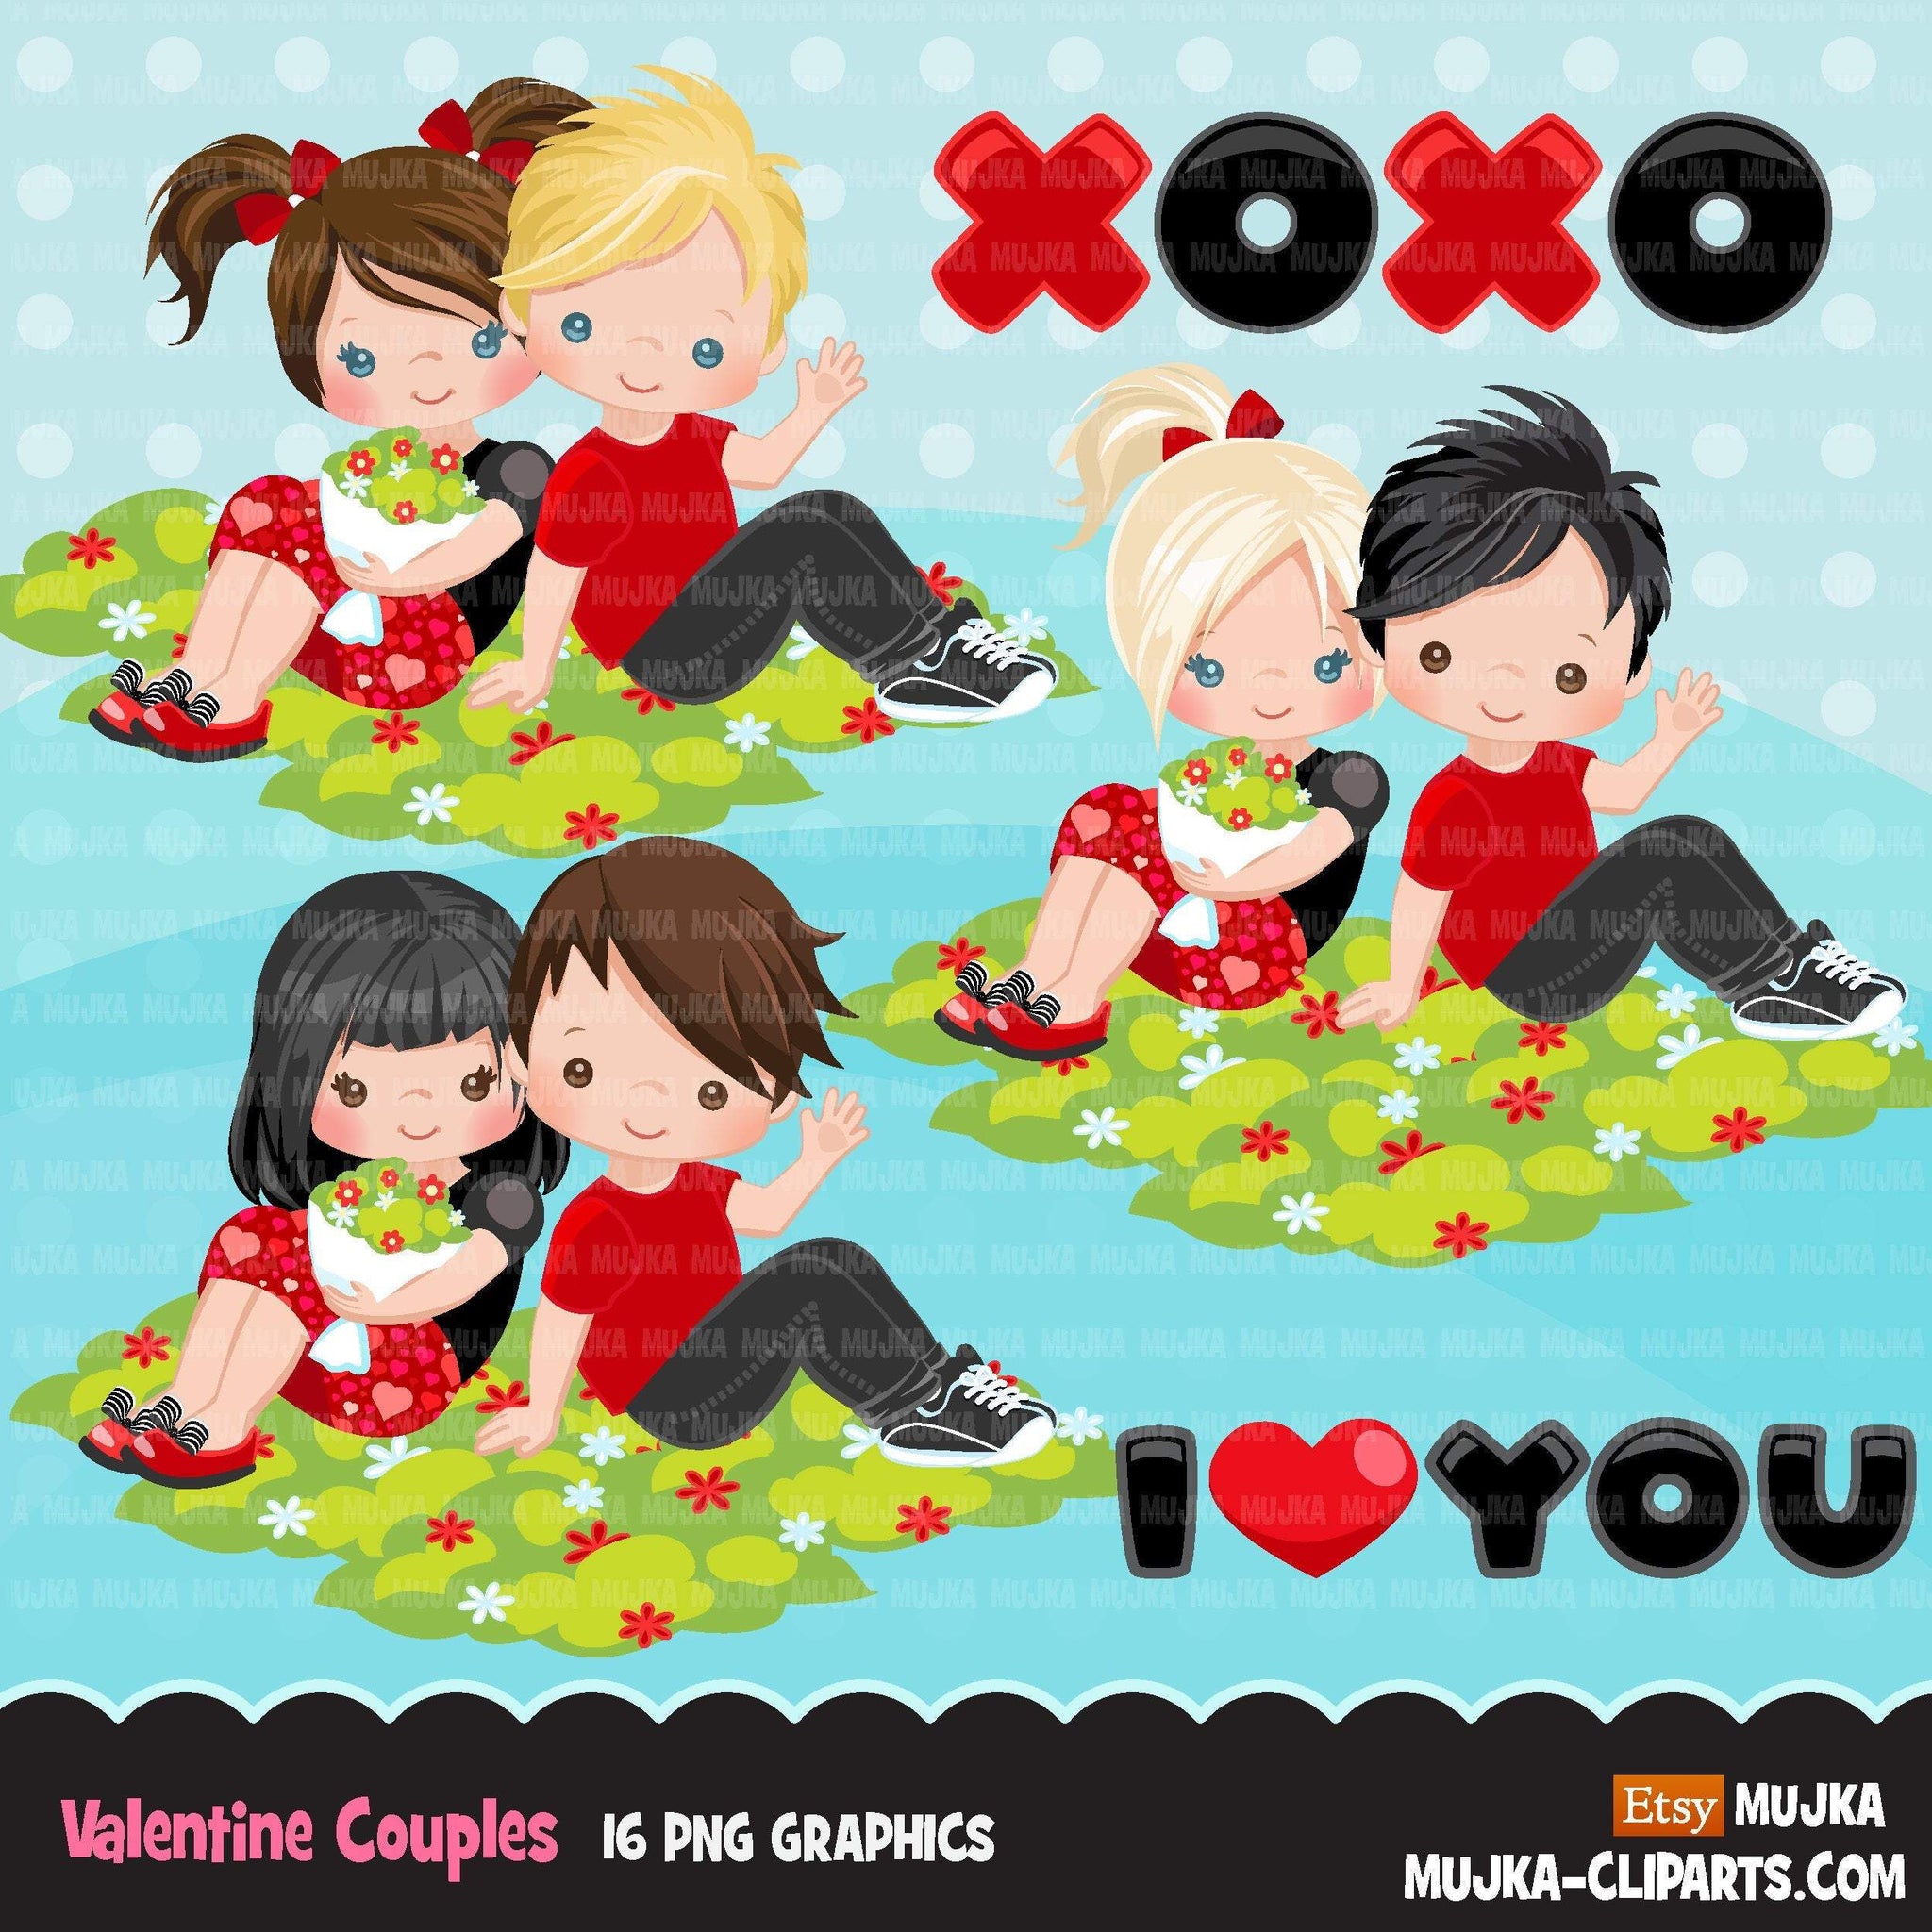 Imágenes prediseñadas del Día de San Valentín, lindos niños de San Valentín, parejas sentadas, gráficos de San Valentín XOXO, imágenes prediseñadas de uso comercial